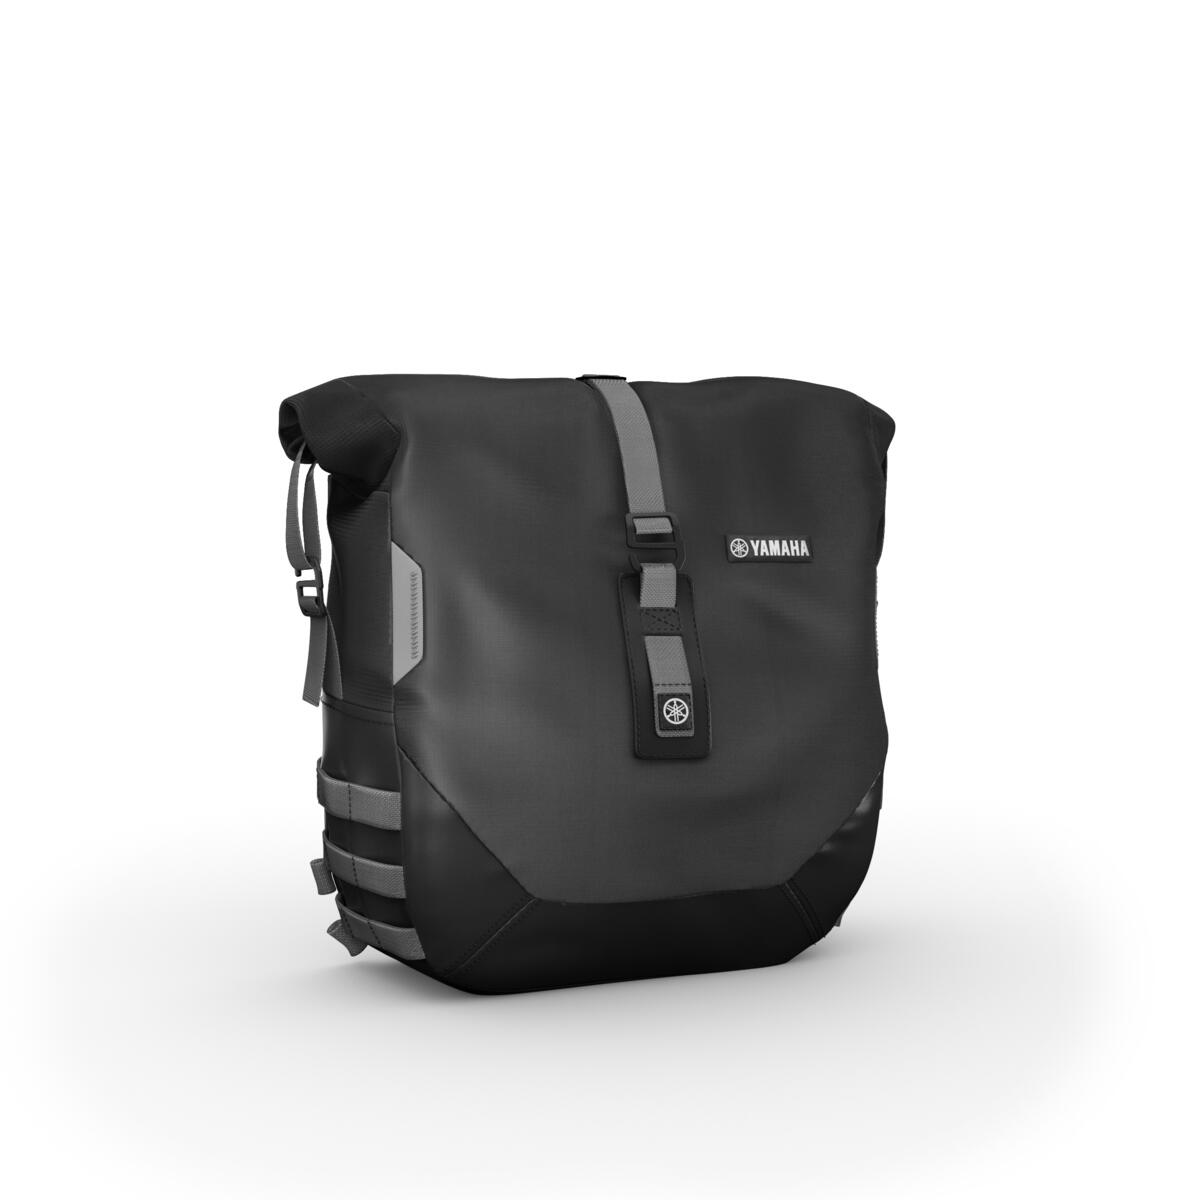 Transformă-ți modelul XSR900 într-un roadster ideal pentru călătorii lungi, cu pachetul Weekend. Echiparea motocicletei cu două genți moi de 13,5 litri, care acceptă până la 5 kilograme fiecare, îți va permite să împachetezi lucrurile esențiale și să parcurgi o distanță mai mare. Echiparea cu ușurință a genților cu căptușeli impermeabile îți va proteja bagajele în condiții meteo dificile. Pachetul este furnizat cu un încărcător USB pentru încărcarea navigației sau a telefonului în timpul călătoriei.